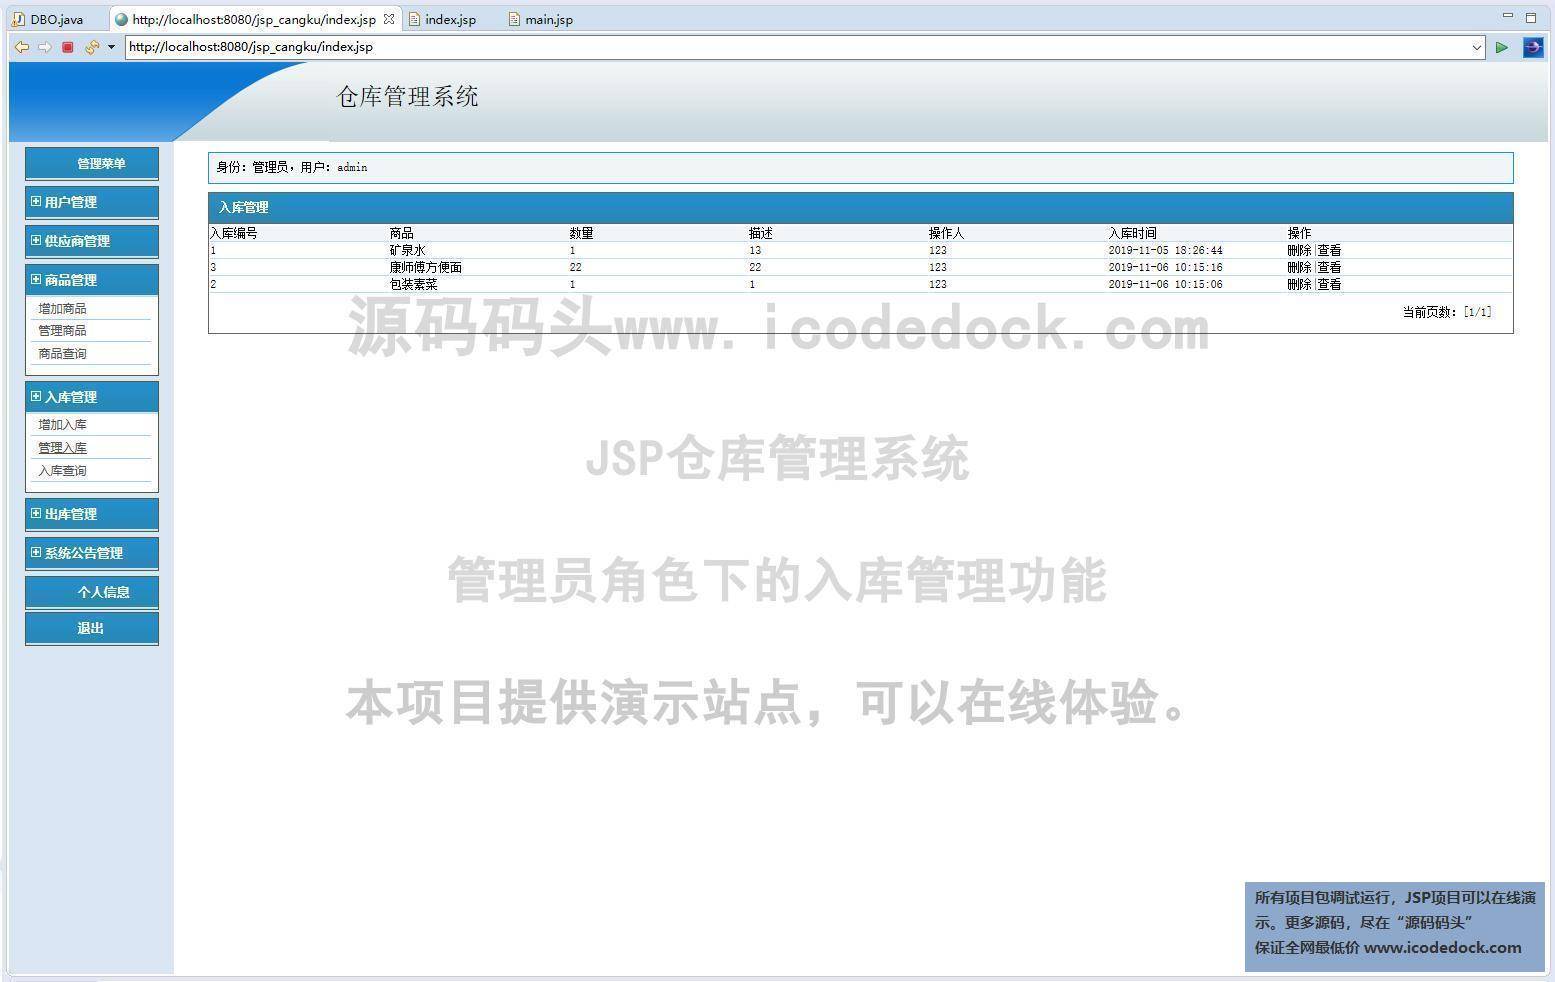 源码码头-JSP仓库管理系统-管理员角色-入库管理